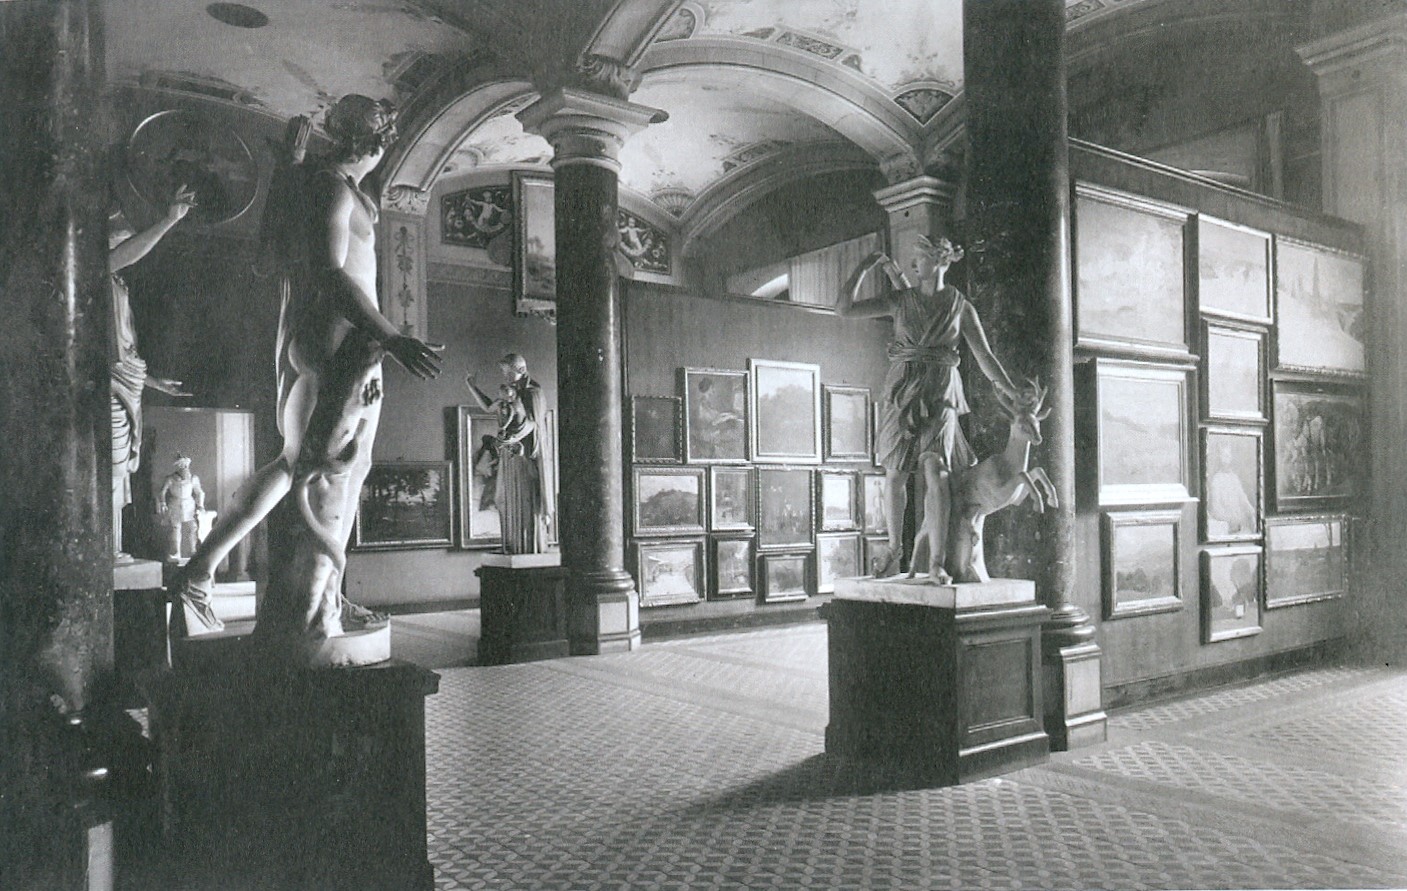 historische Fotografie des Feuerbachsaals, auf der Stellwände mit Gemälden sowie Skulpturen zu sehen sind